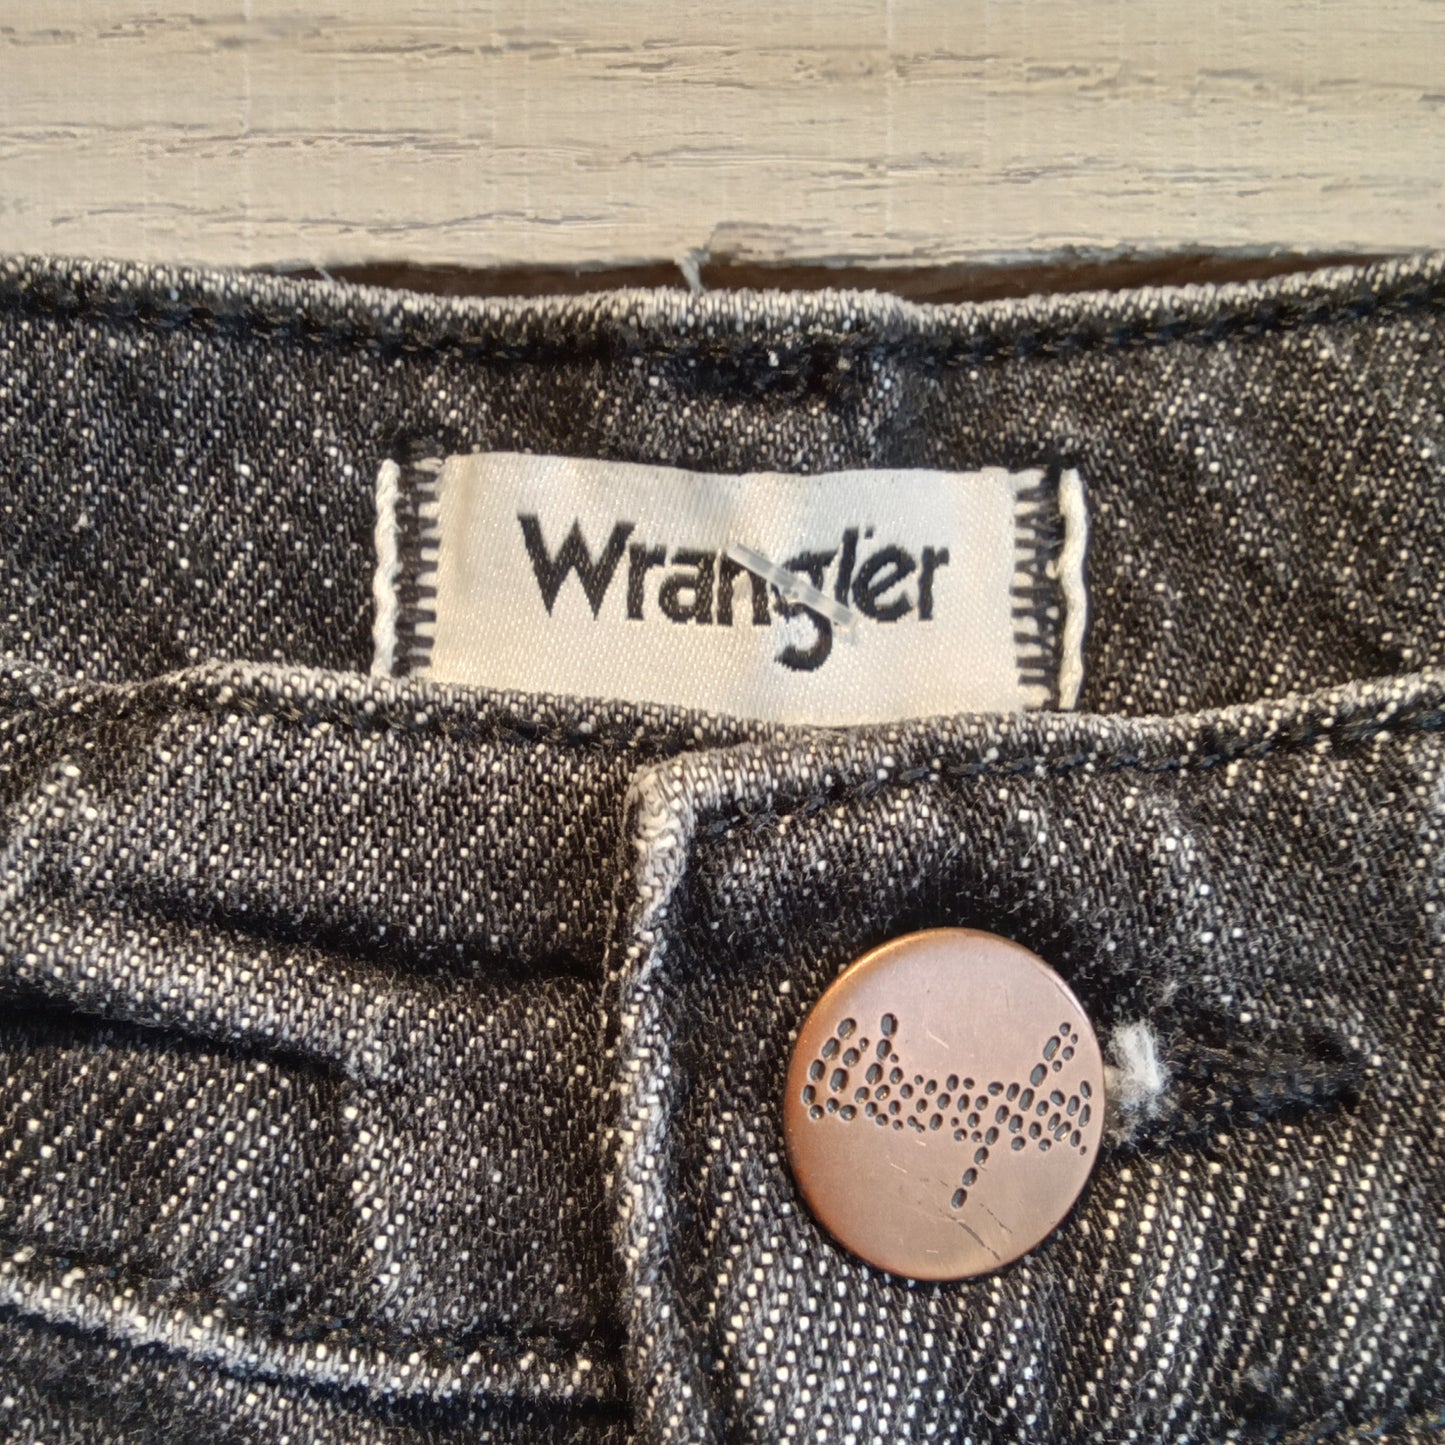 Wrangler Wild West Straight Jeans Sz 31